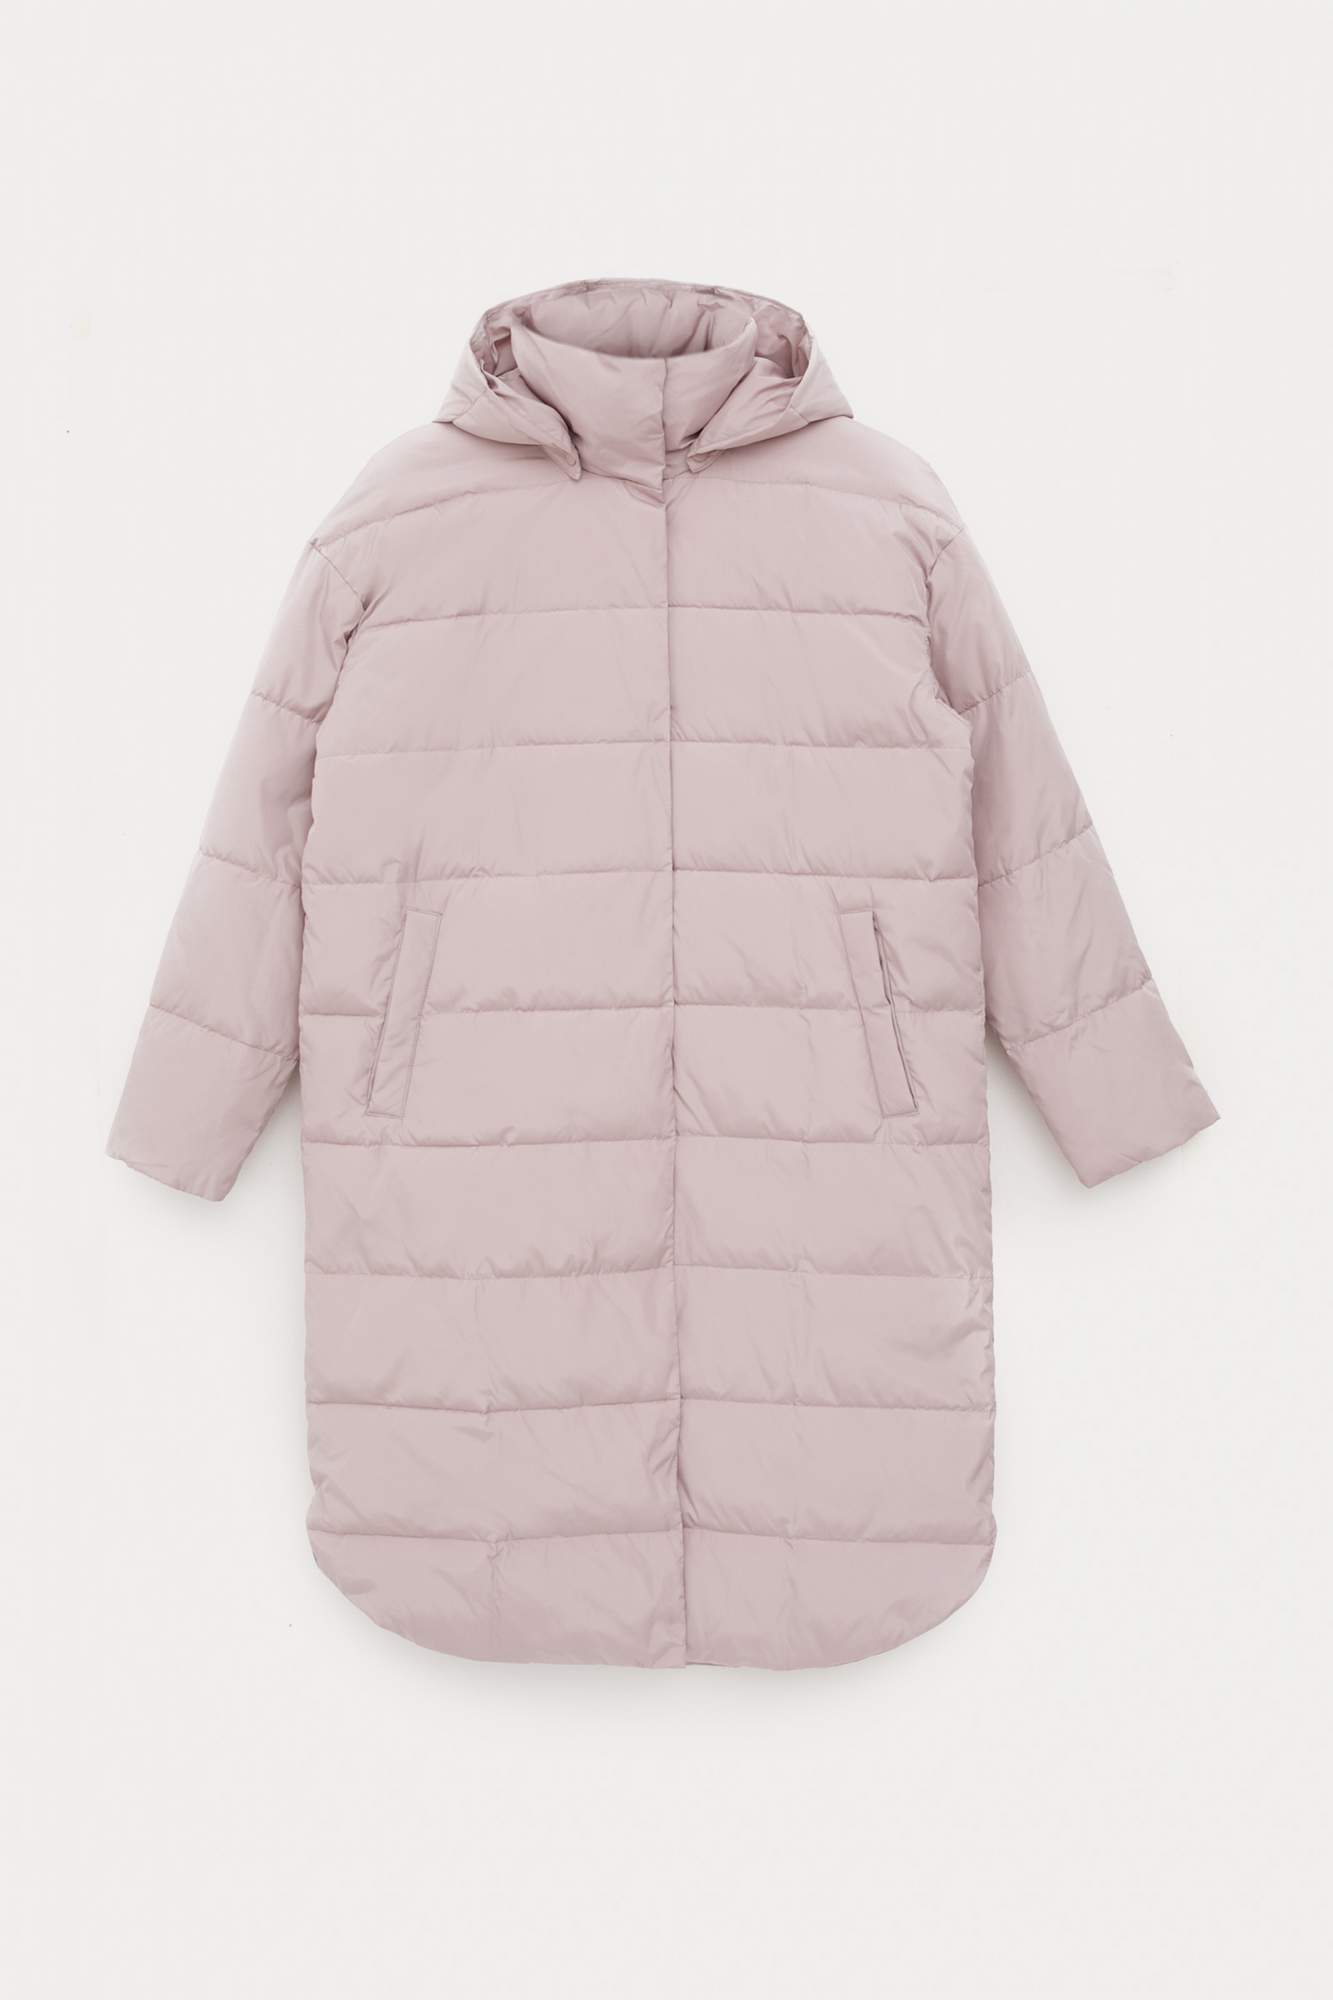 Пальто женское Finn Flare FBC11020 розовое XS